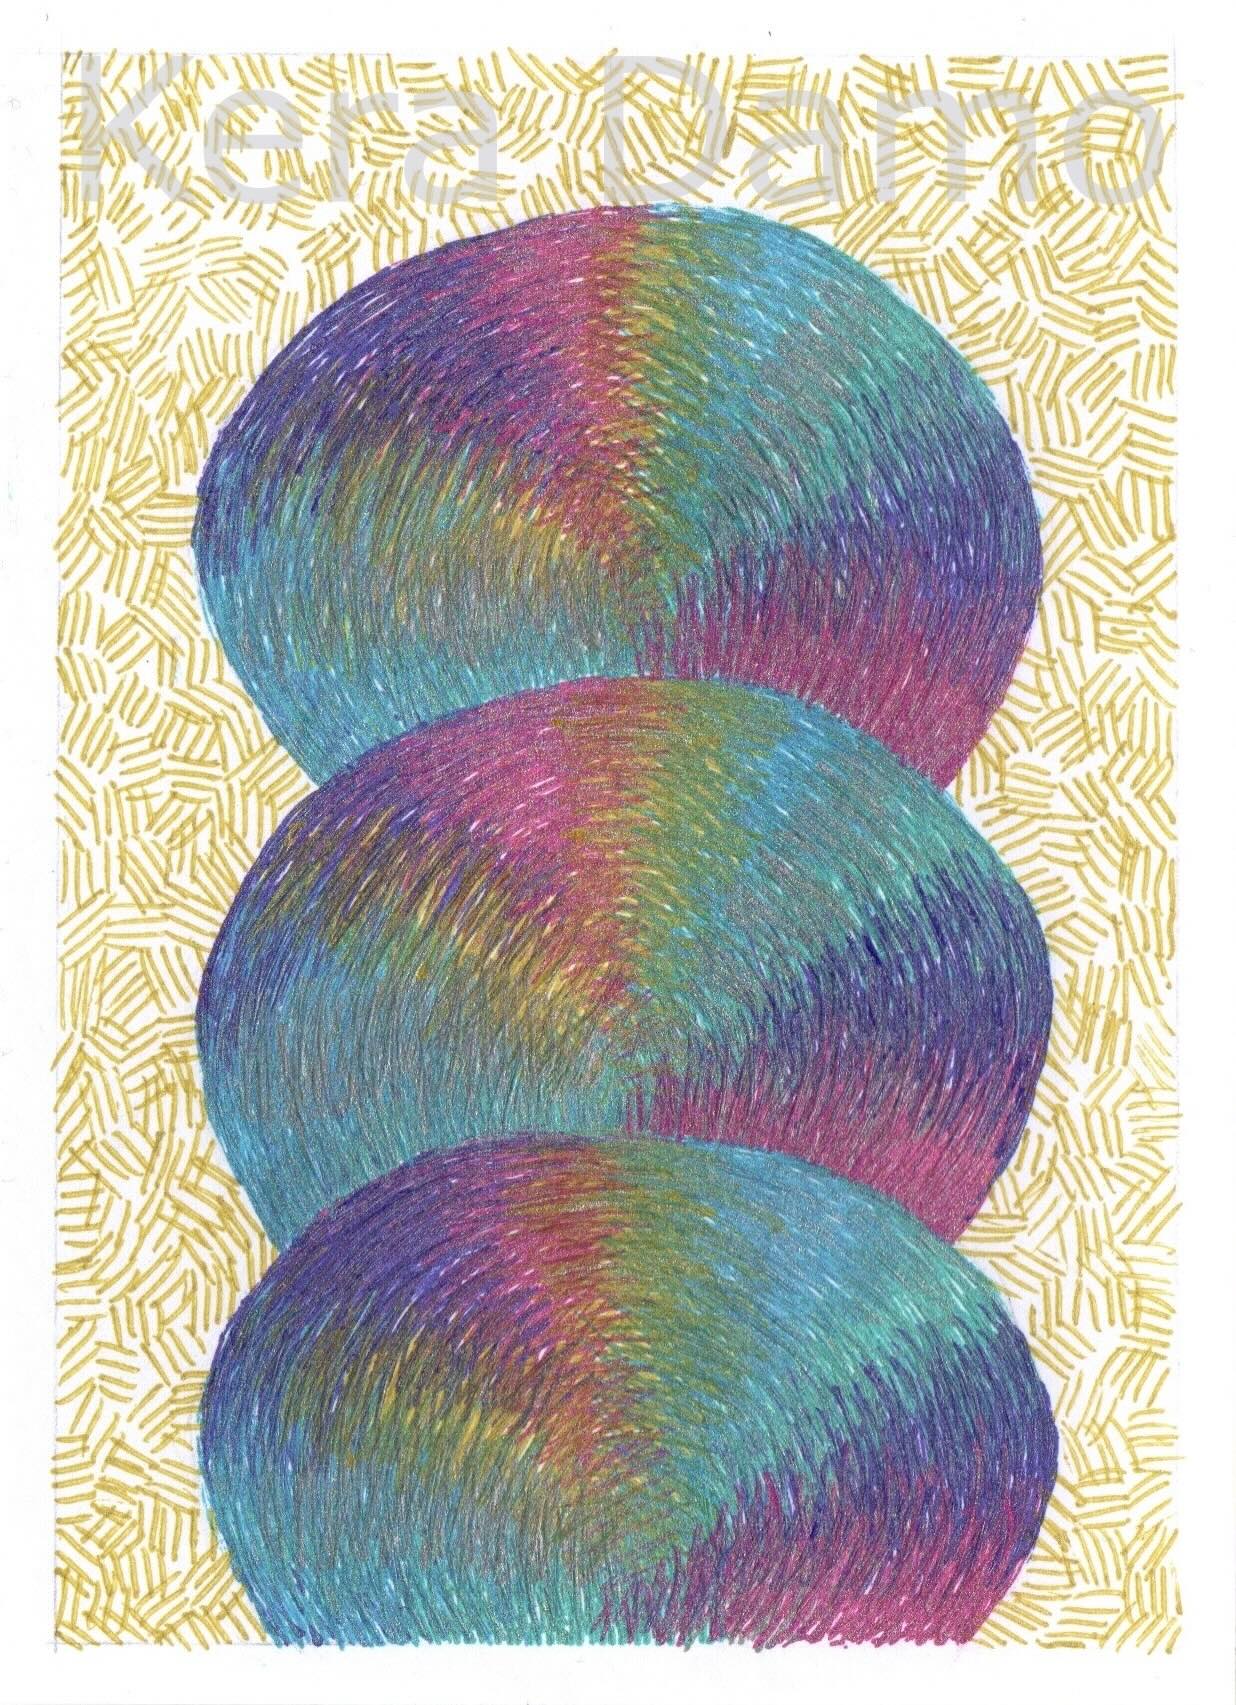 A multicoloured pen drawing made with metallic pens, by visual artist Kera Damo from the Hague / Een meerkleurige pentekening gemaakt met metallic pennen, door beeldend kunstenaar Kera Damo uit Den Haag